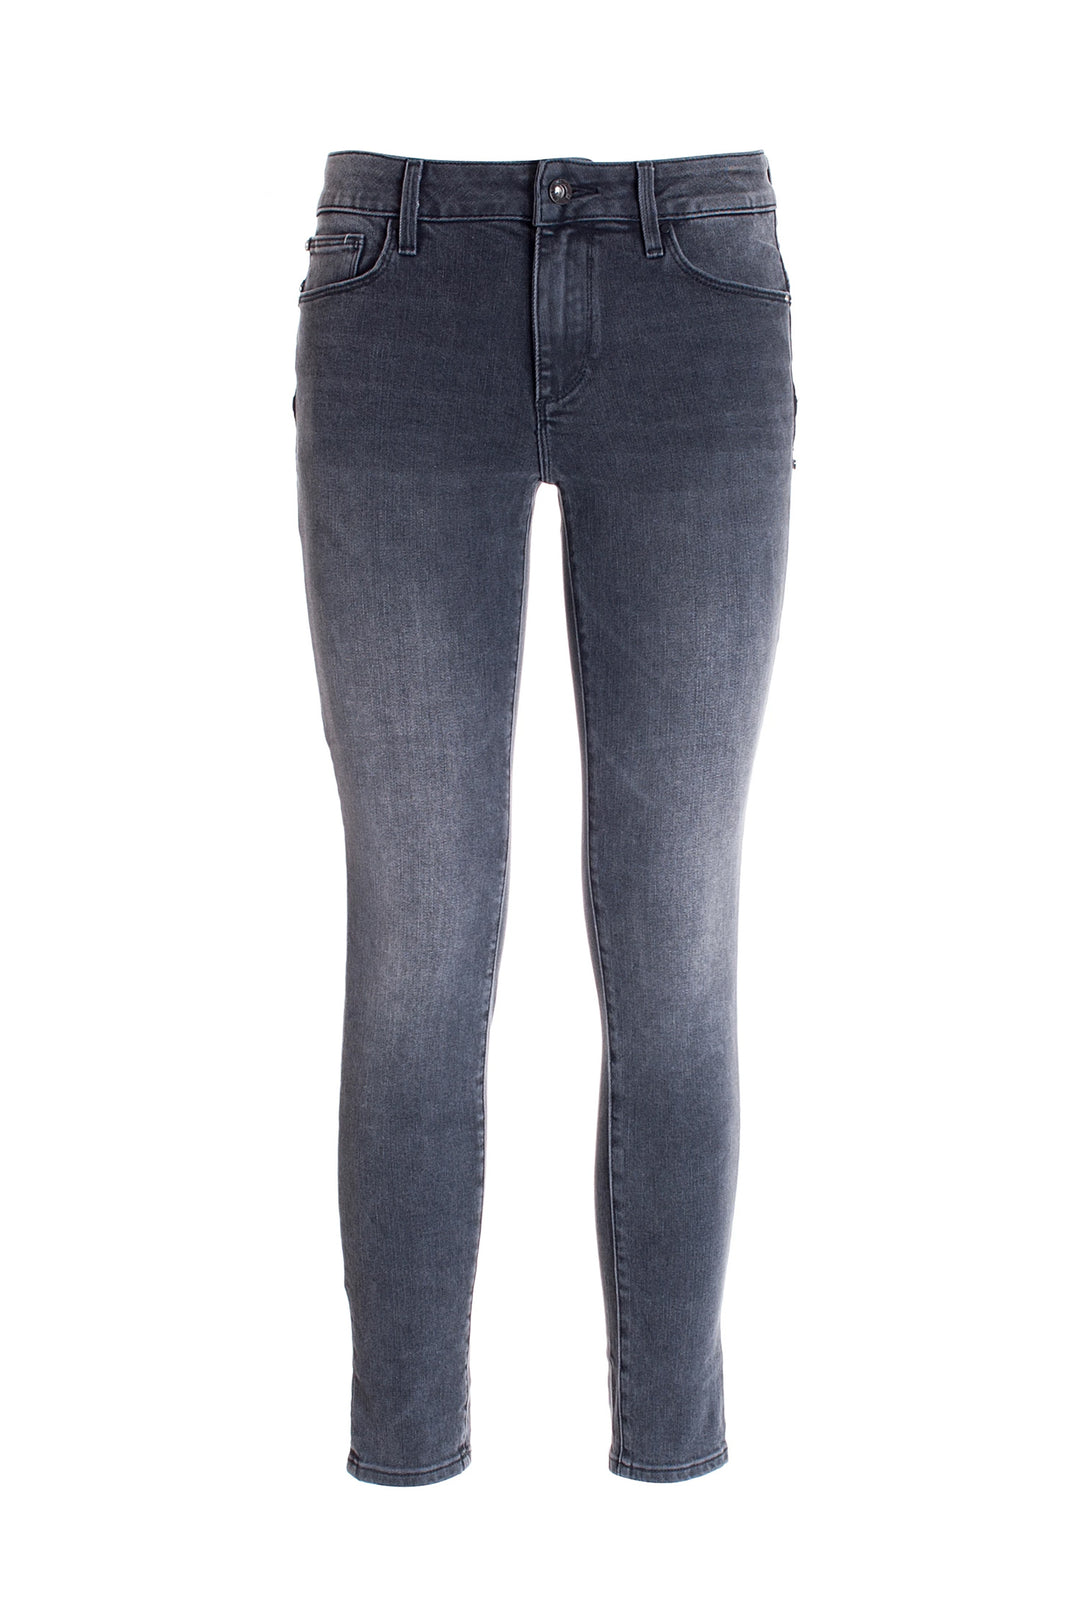 FRACOMINA Jeans skinny effetto push-up in denim stretch nero con lavaggio stone - Mancinelli 1954